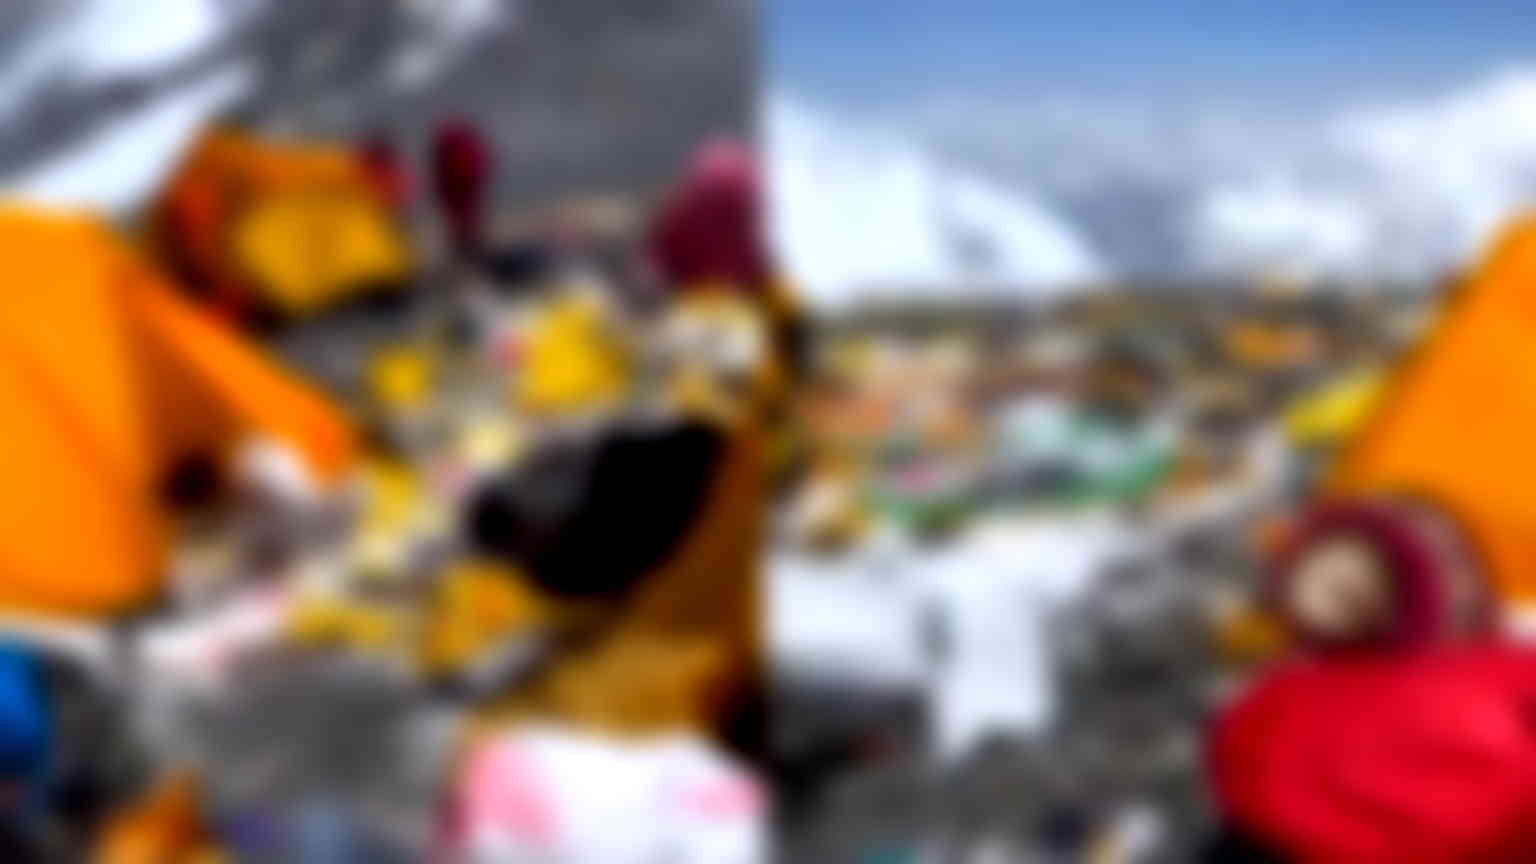 Alarming video shows how Mount Everest became ‘world’s highest garbage dump’